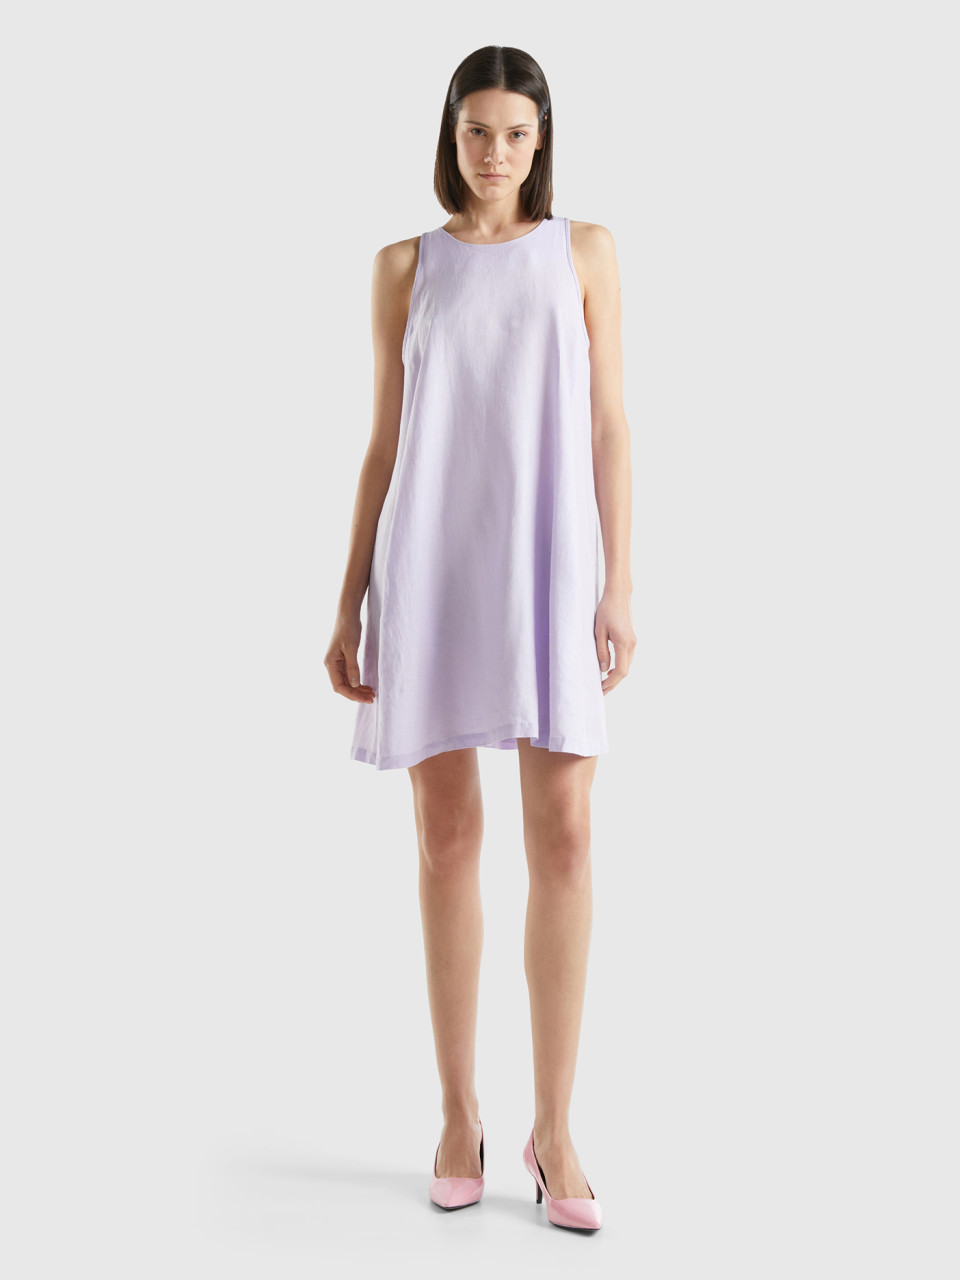 Benetton, Sleeveless Dress In Pure Linen, Lilac, Women